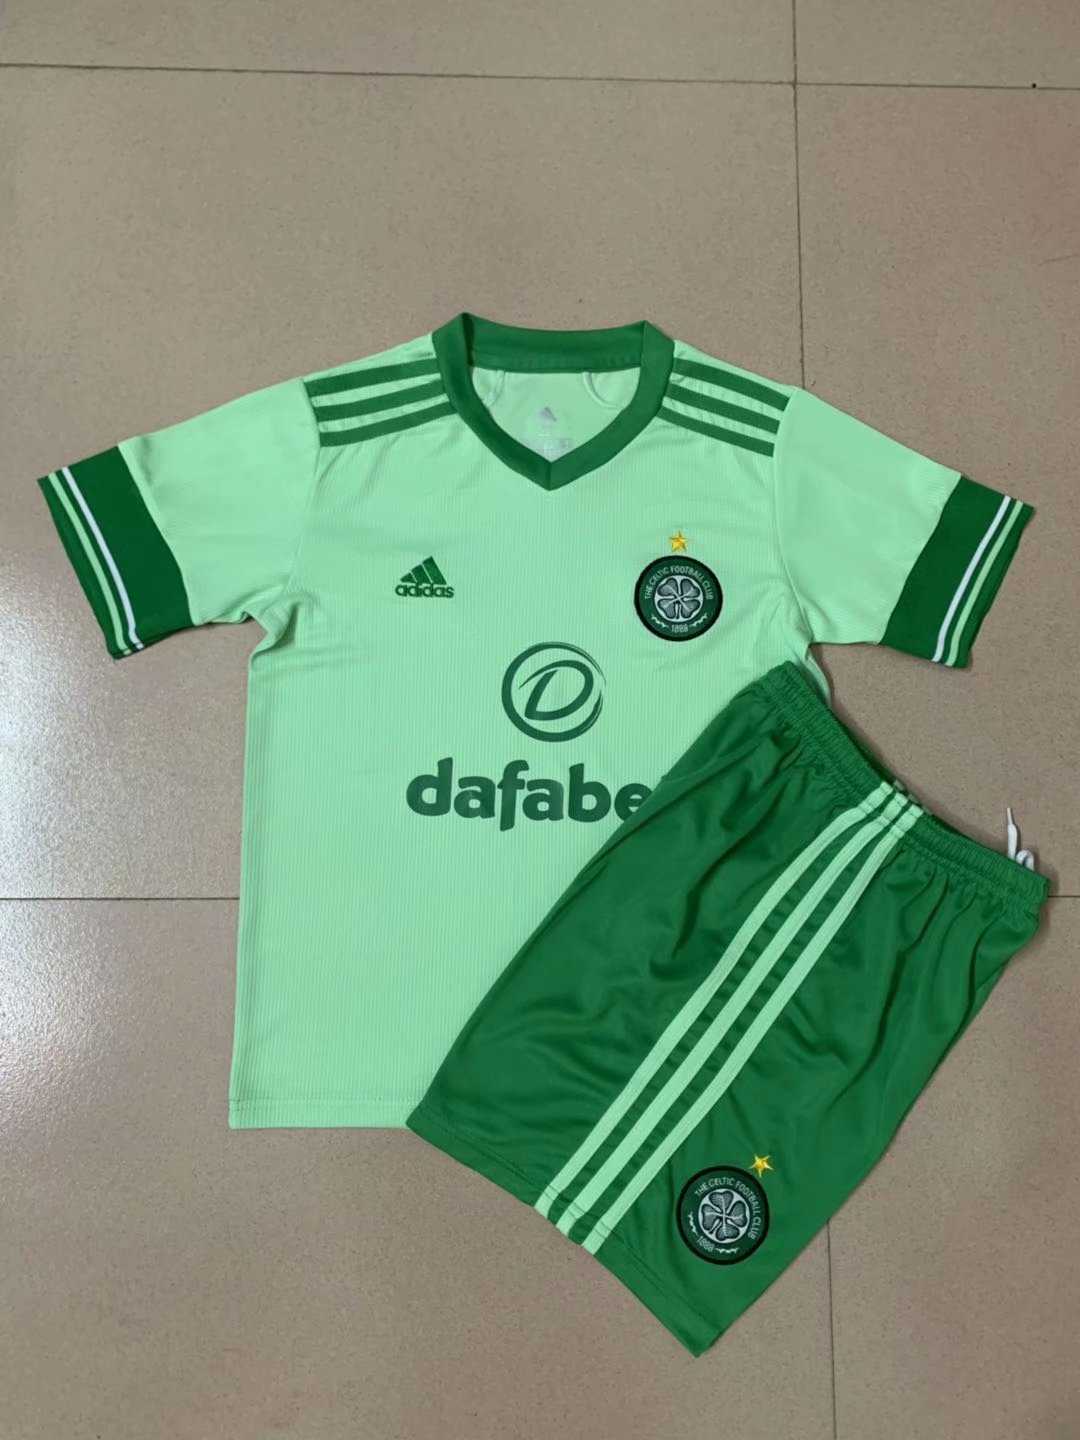 2020/21 Celtic FC Away Kids Soccer Kit(Jersey+Shorts)